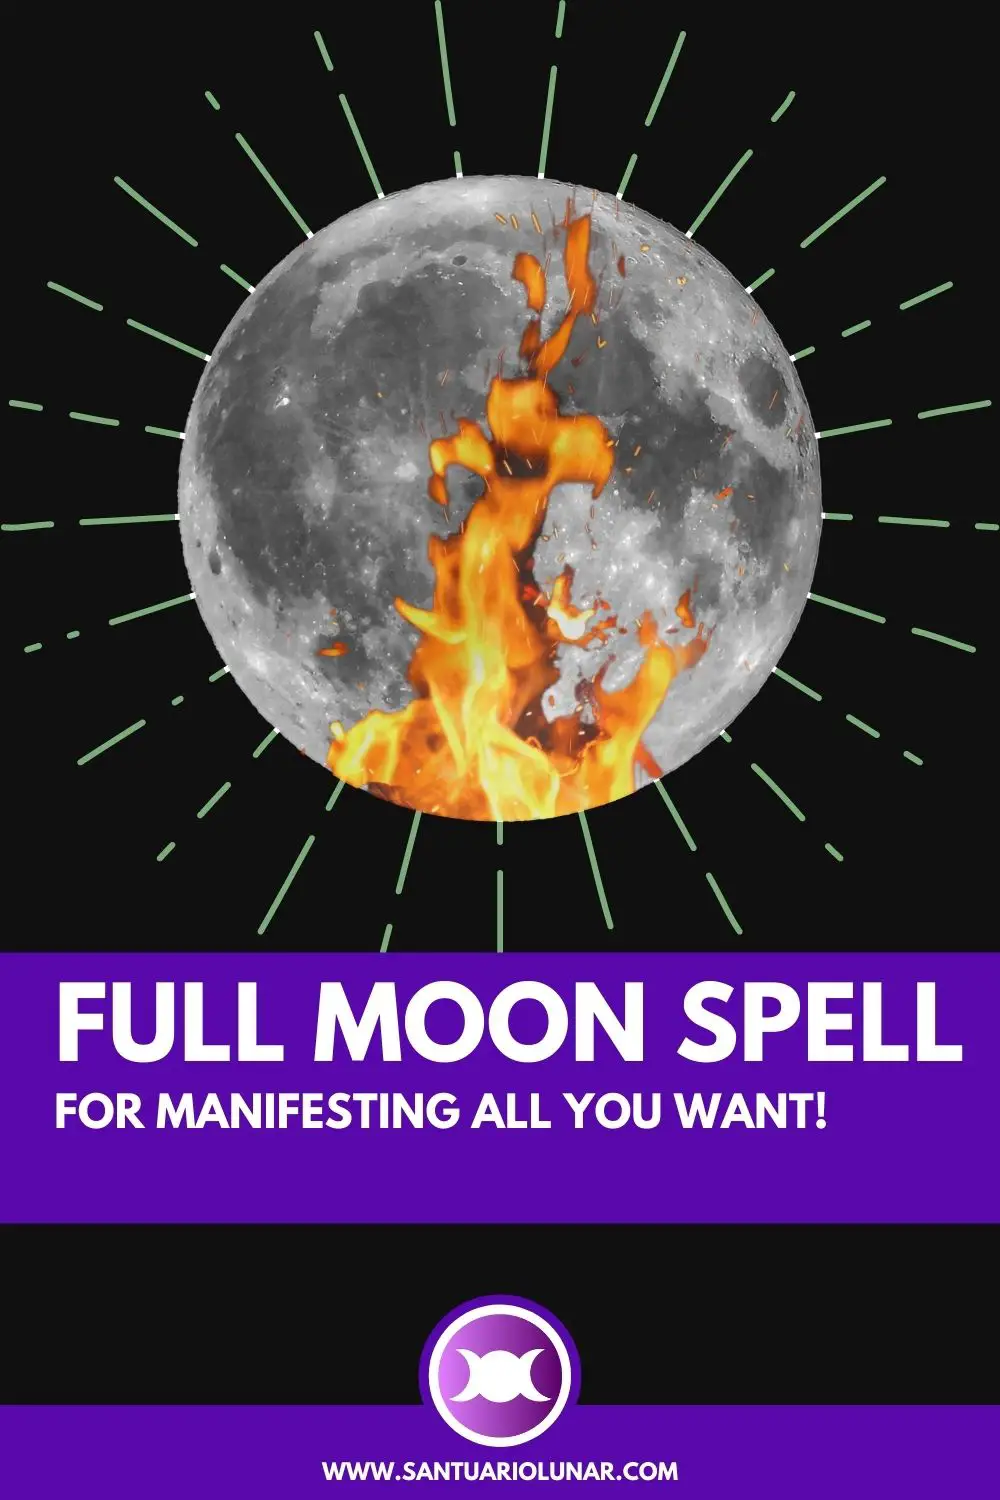 Full Moon Spell for manifesting Pin for Pinterest